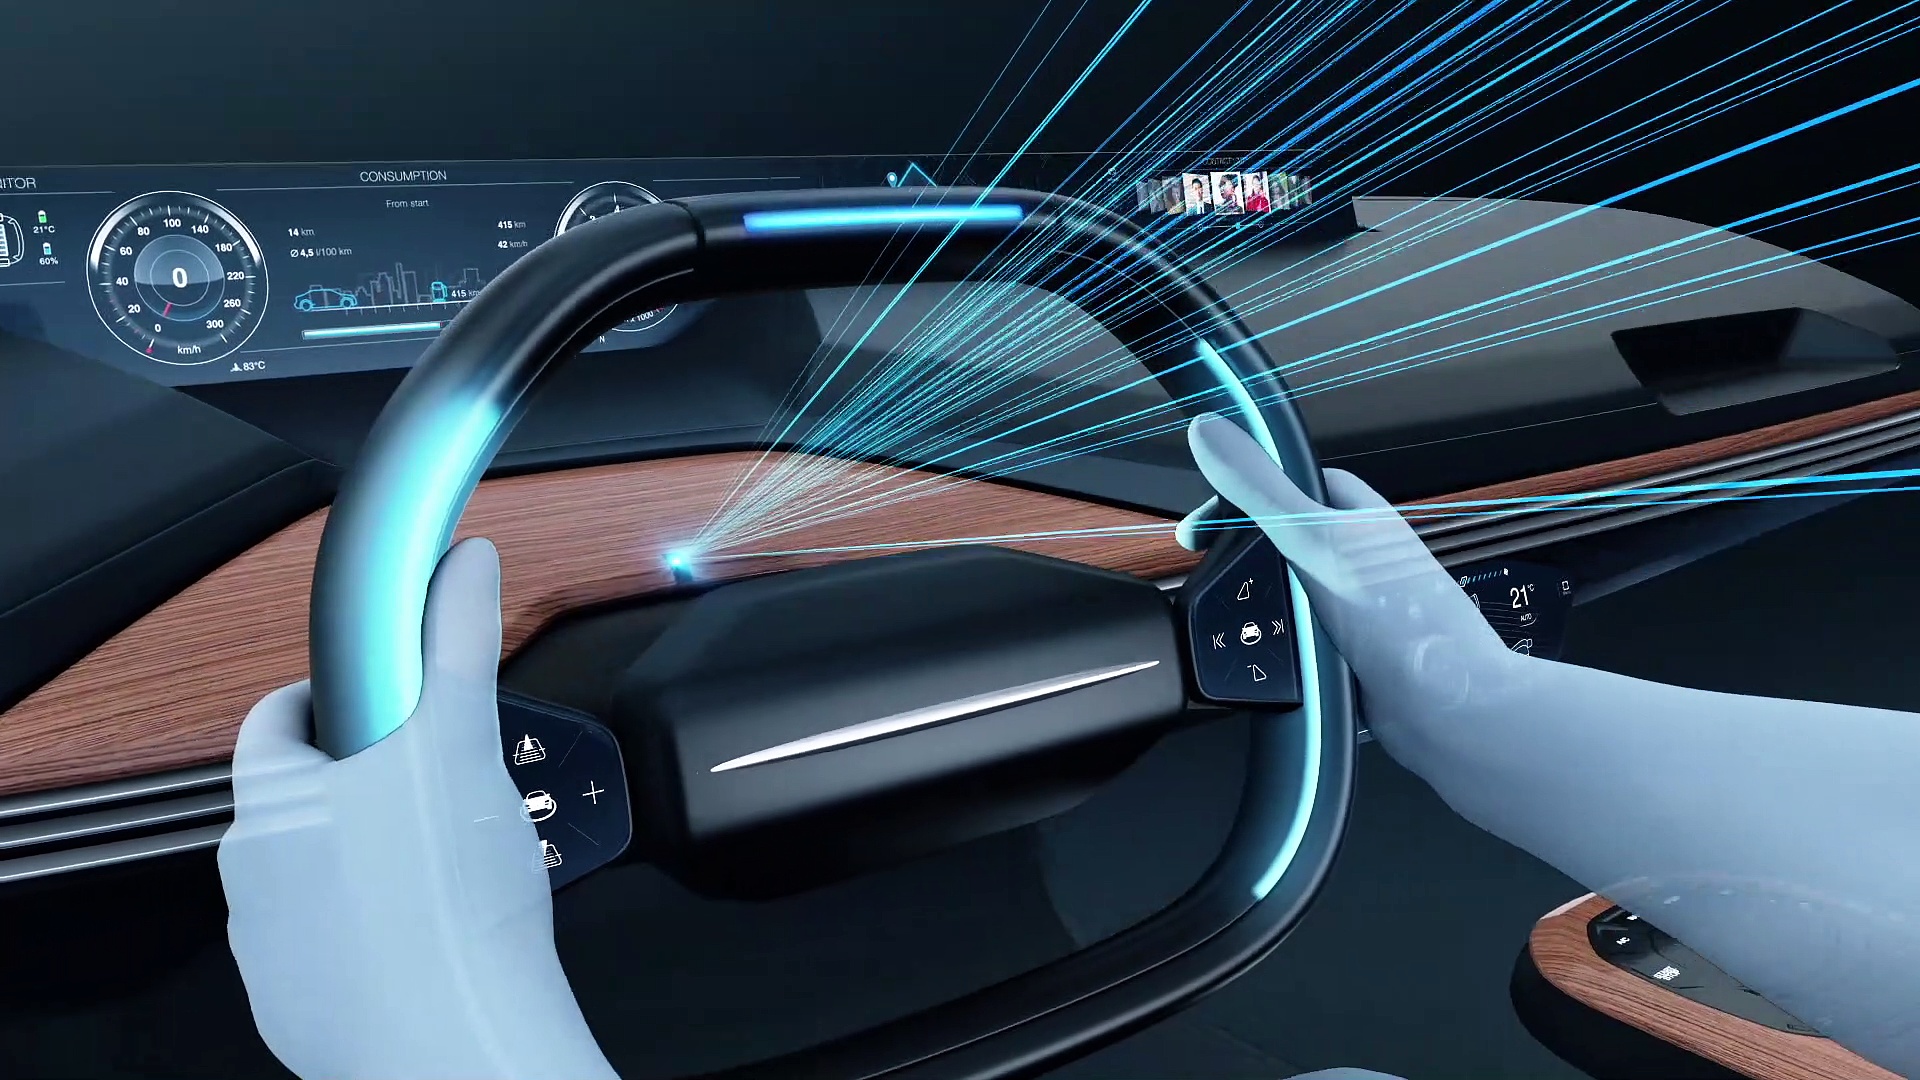 Das Auto der Zukunft: Displays, Touch Screen, Streaming